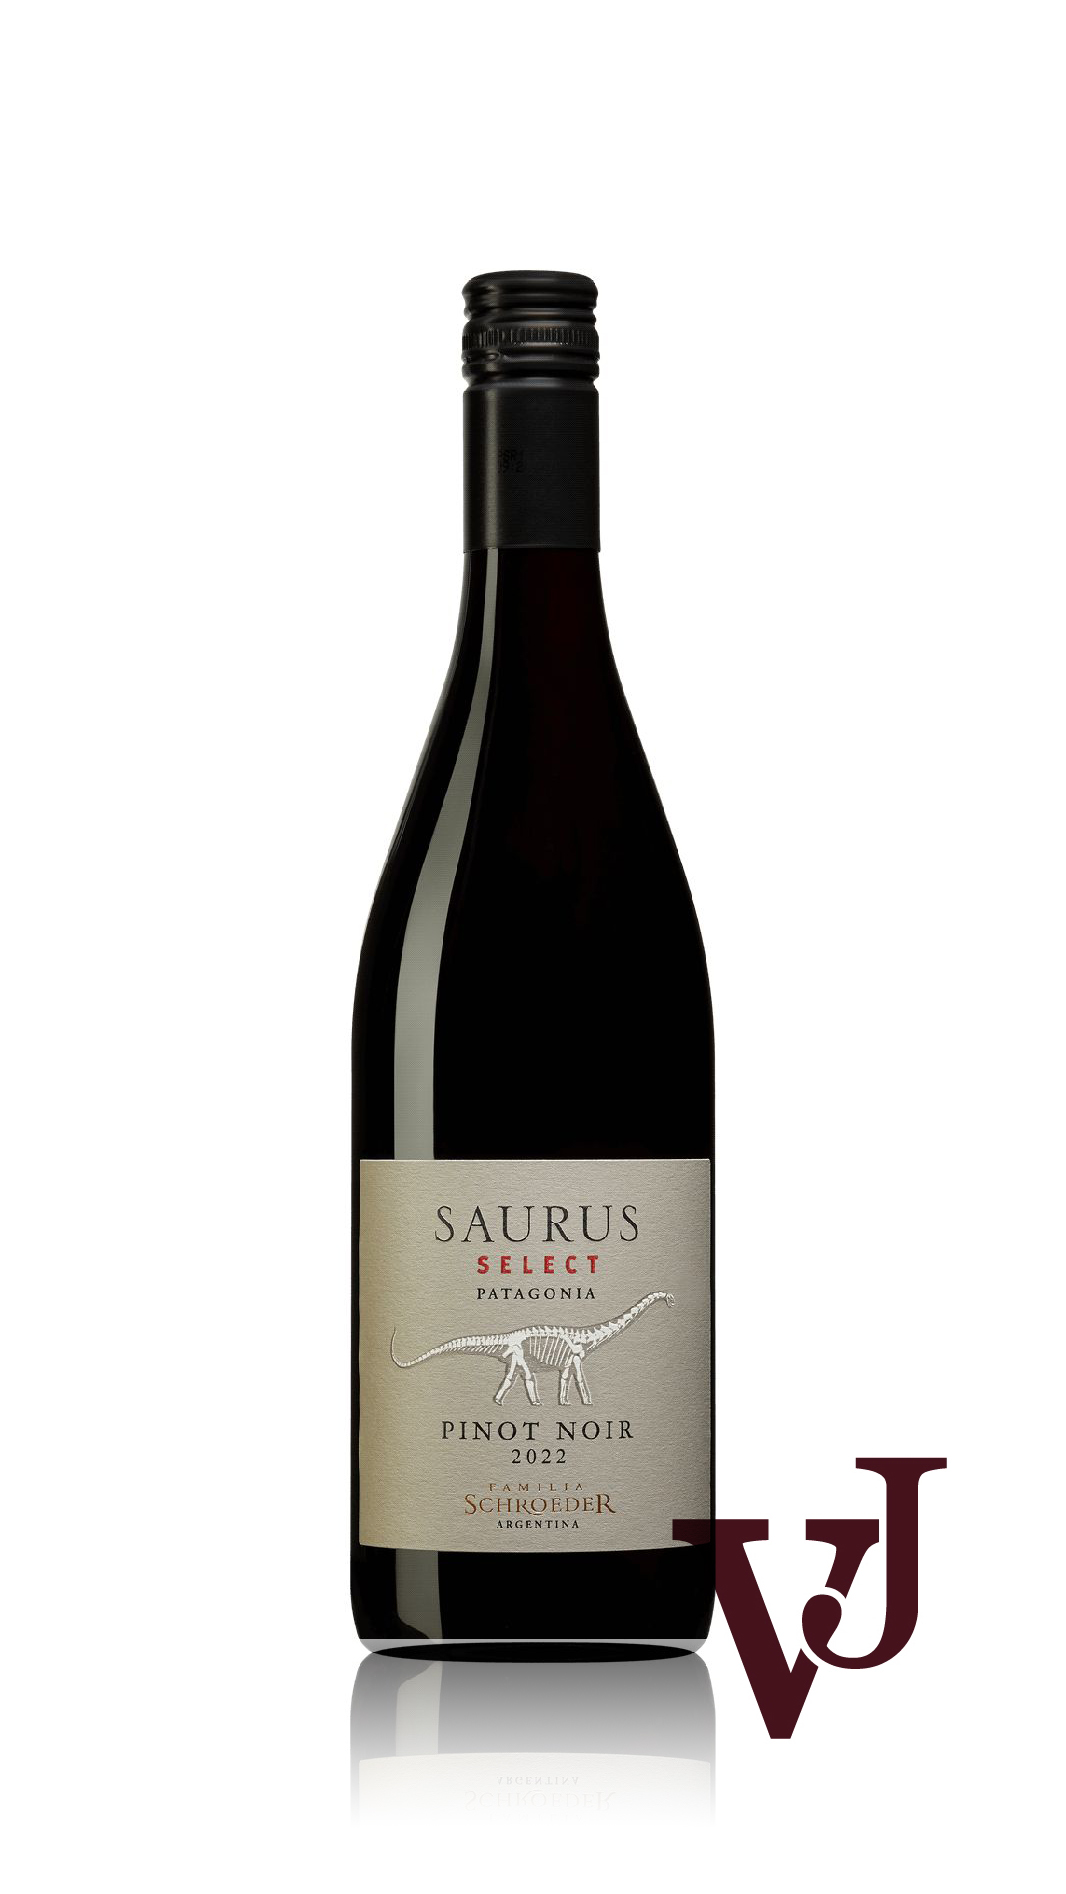 Rött Vin - Saurus Select Pinot Noir 2022 artikel nummer 255701 från producenten Familia Schroeder de Maria y Adelina från Argentina - Vinjournalen.se